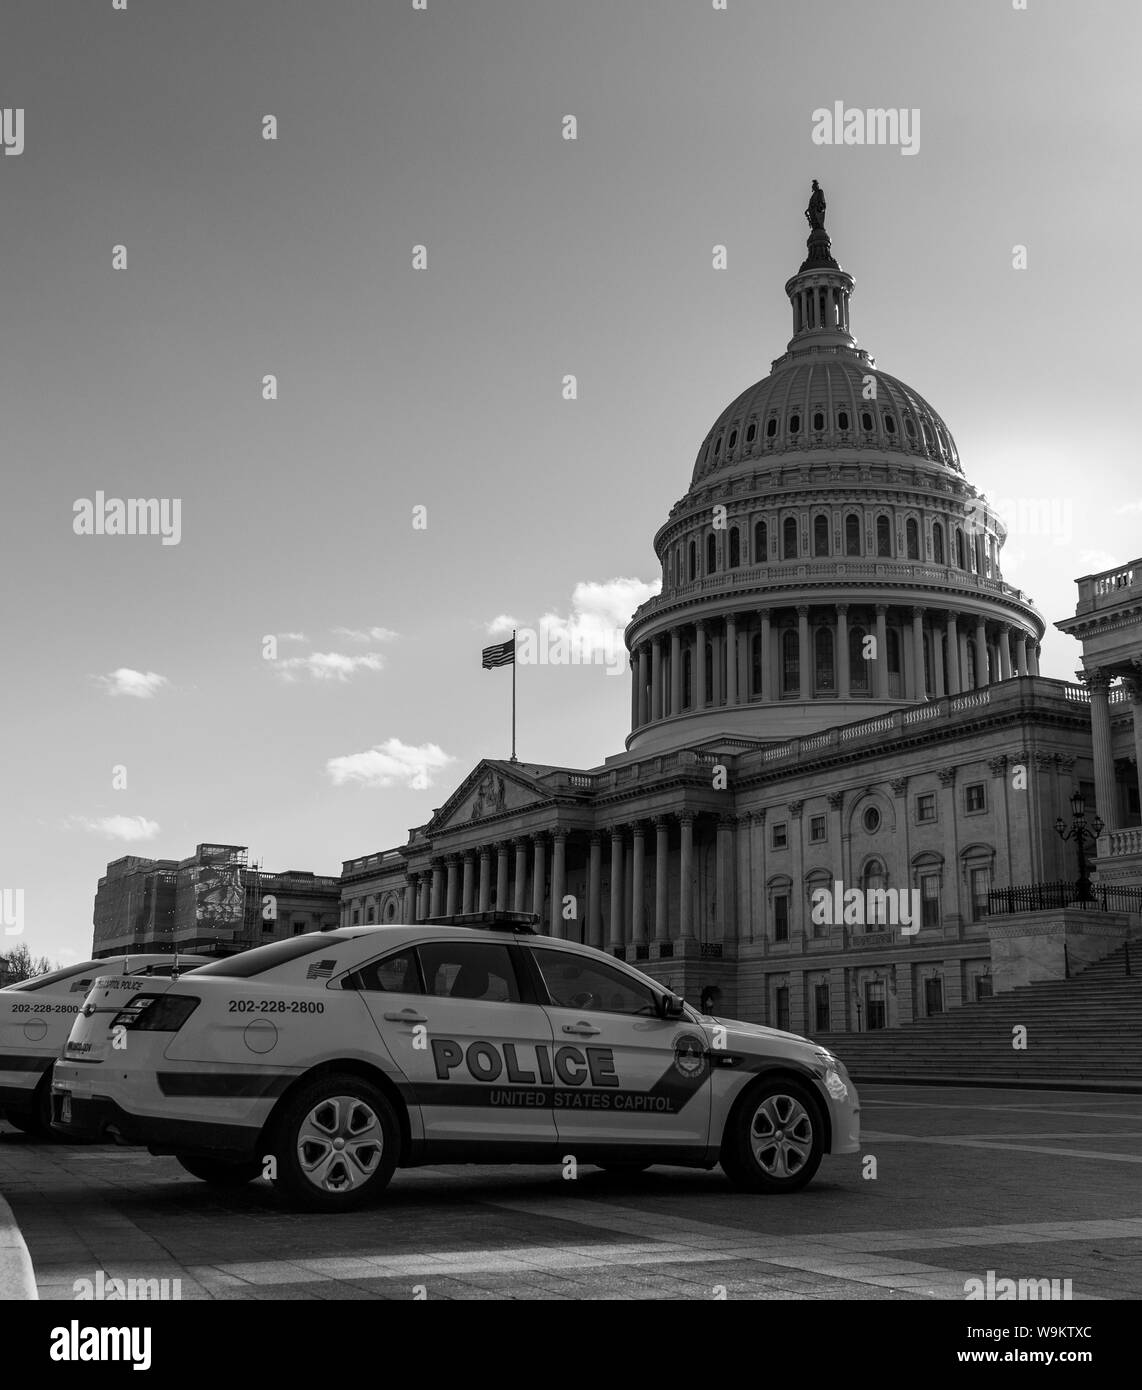 Una fotografía en blanco y negro de un coche de policía delante del Capitolio de los Estados Unidos. Foto de stock